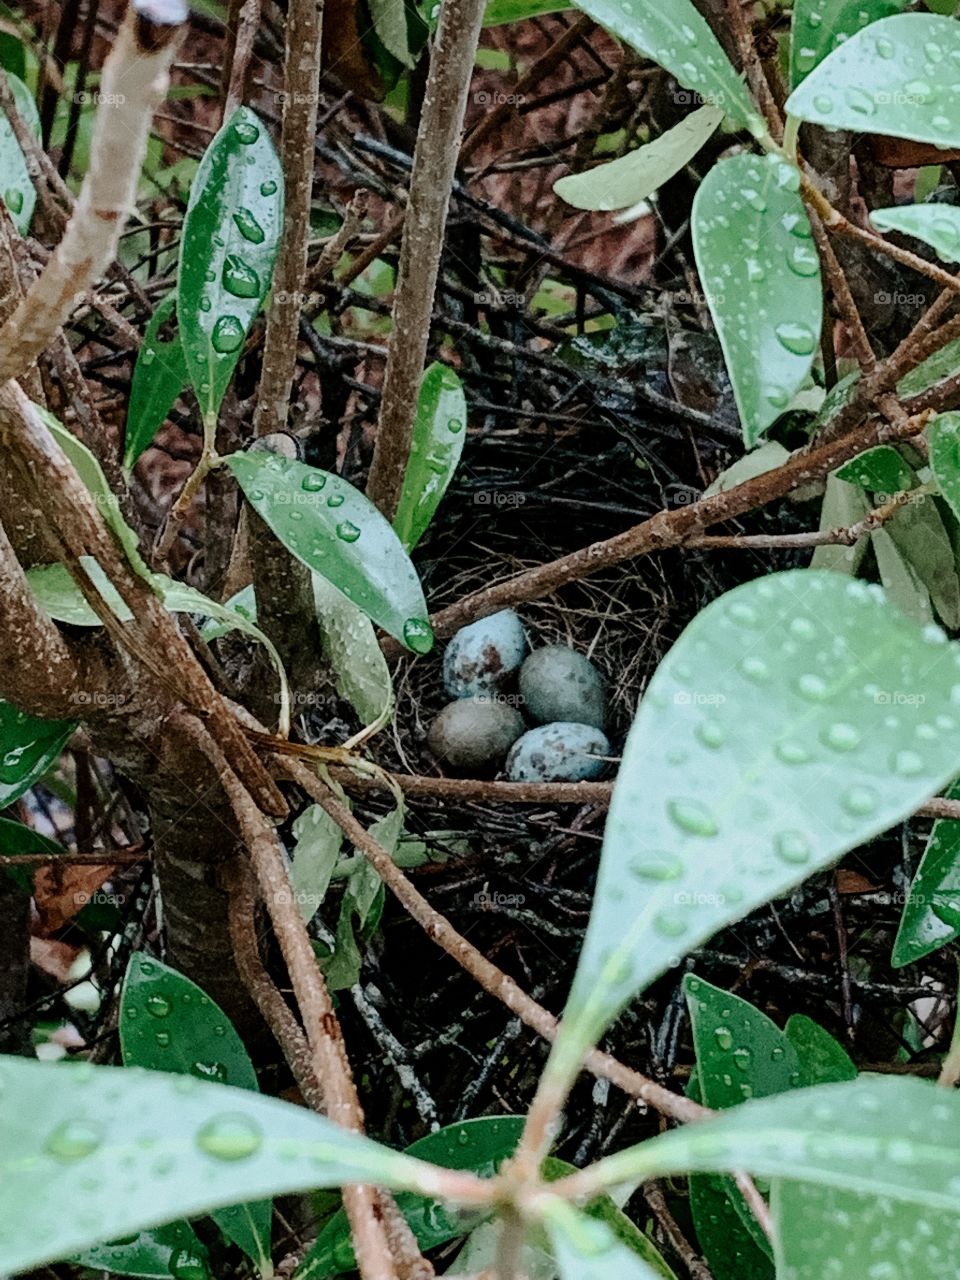 Bird eggs in a nest on a rainy day